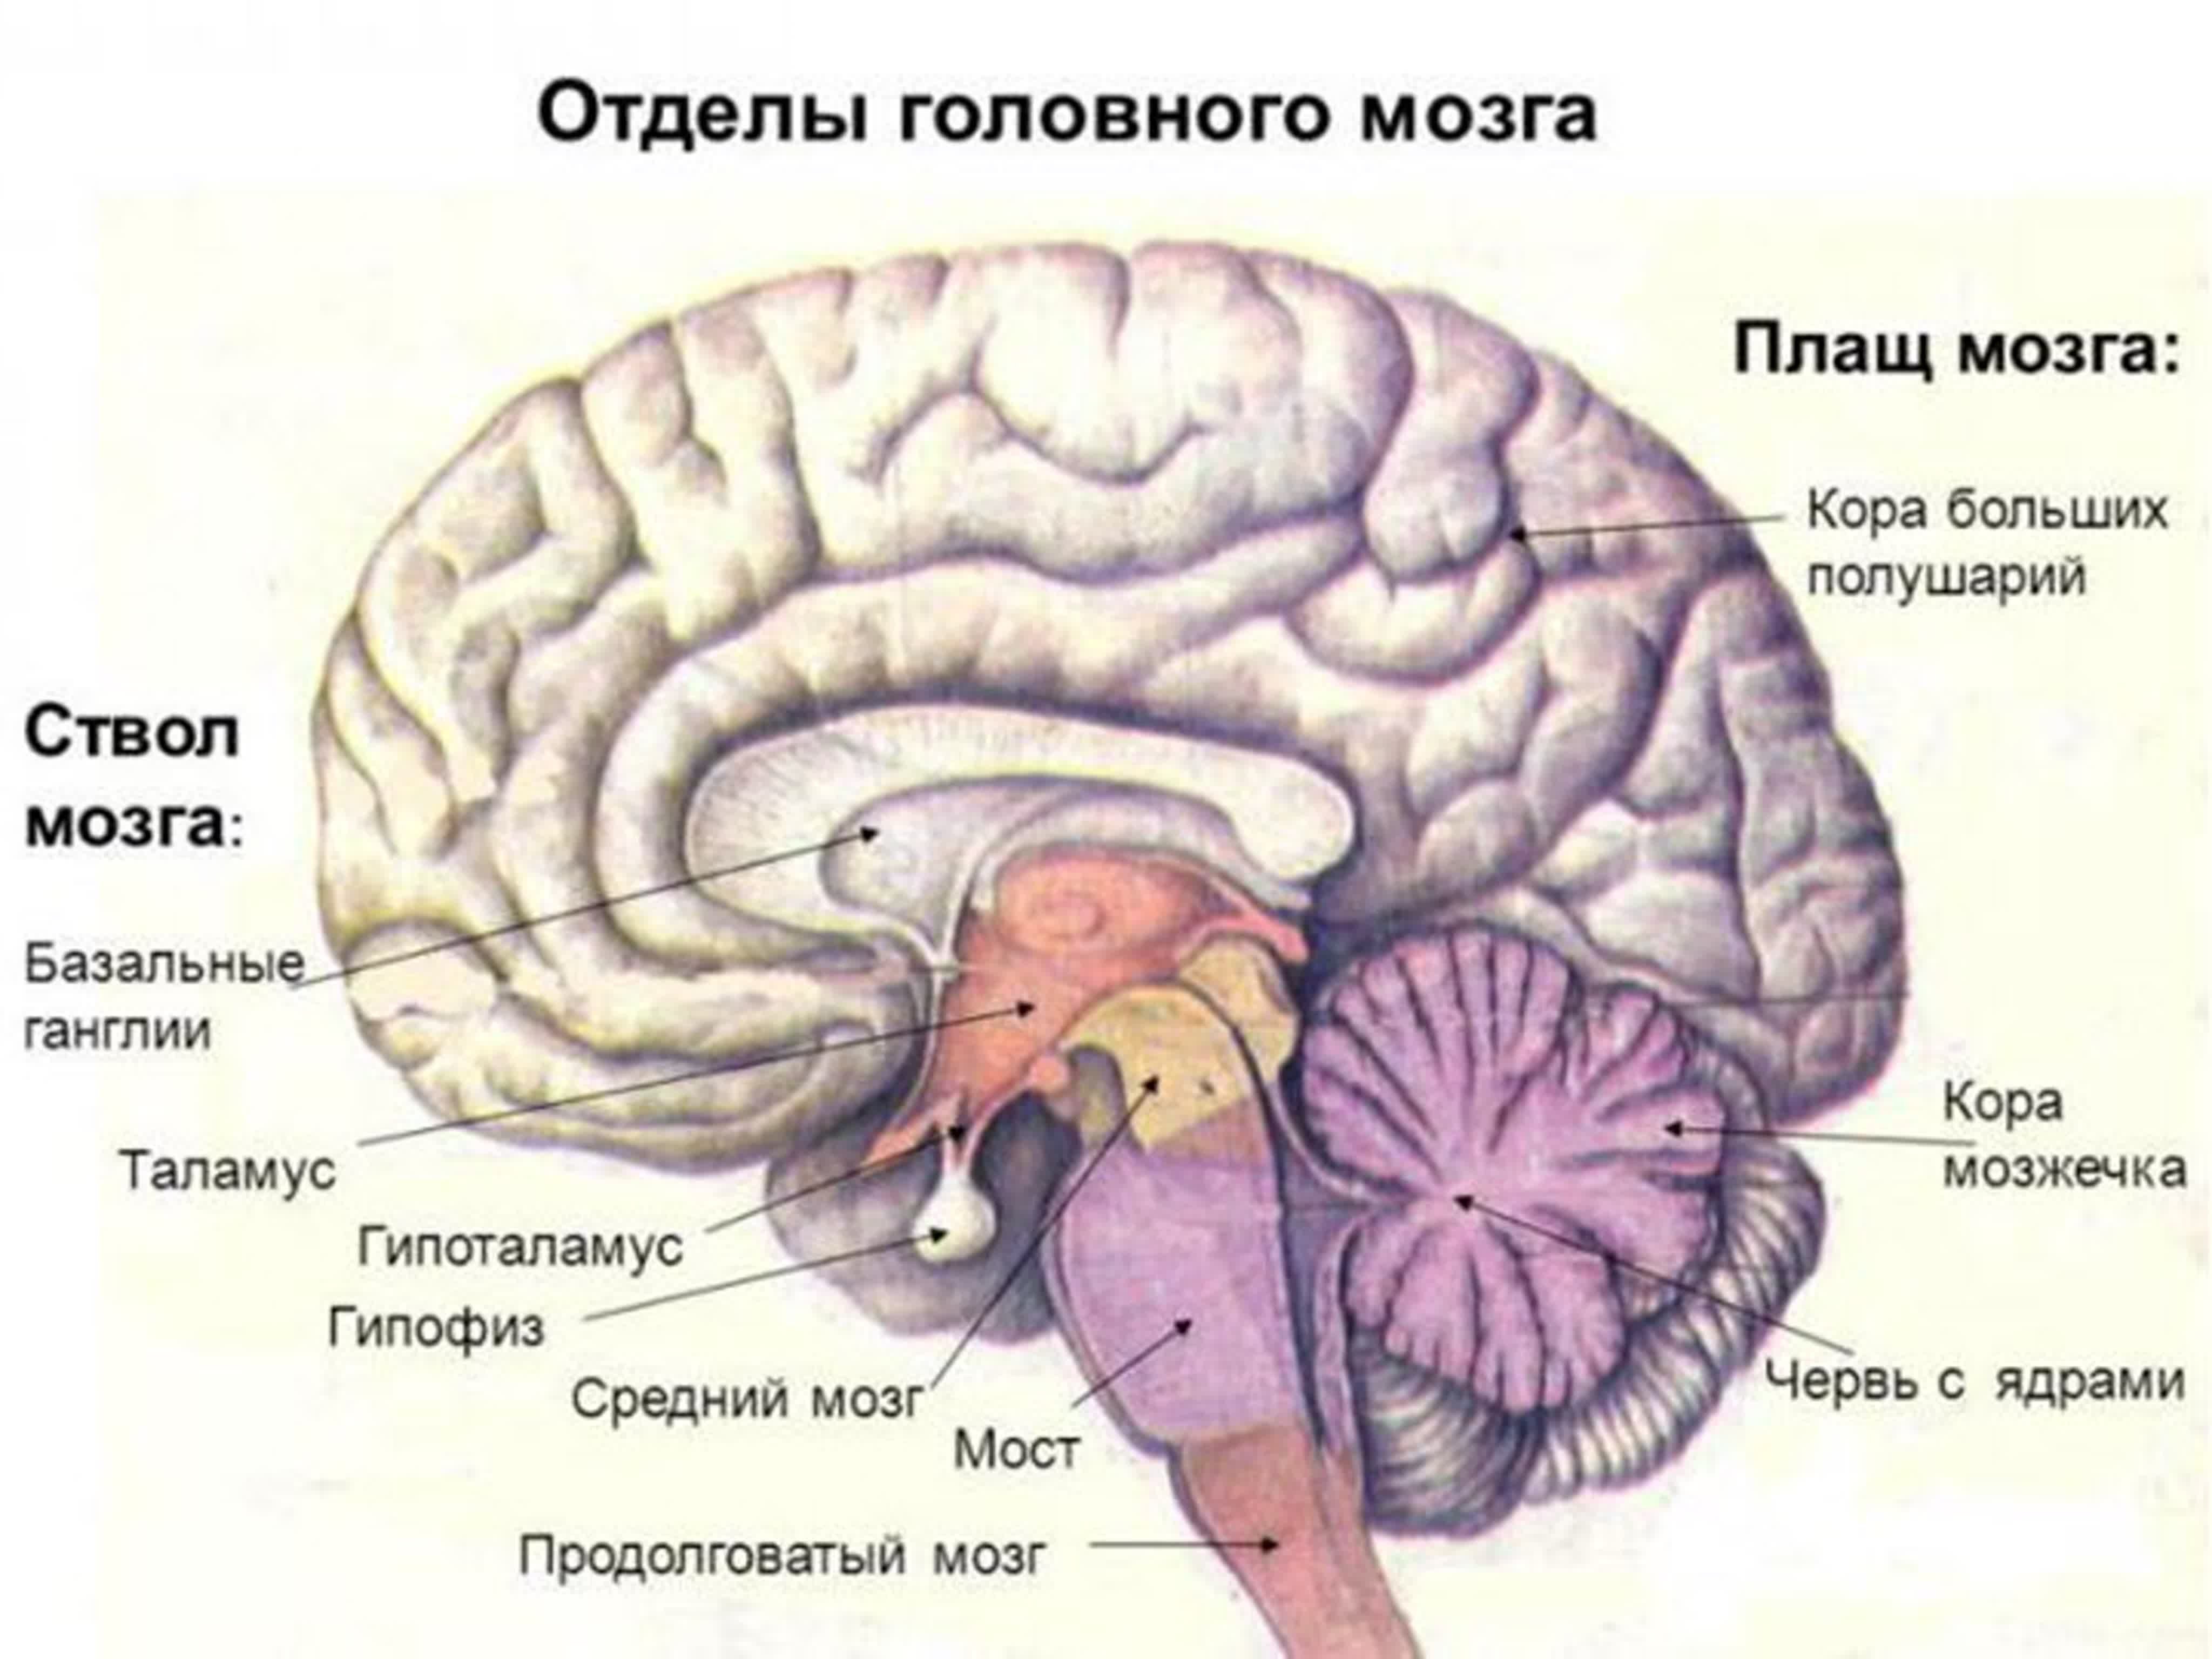 5 основных мозгов. Функции отделов головного мозга рисунок. Функции отделов головного мозга анатомия. Отделы головного мозга и основные структуры отделов. Отделы головного мозга.строение больших полушарий.